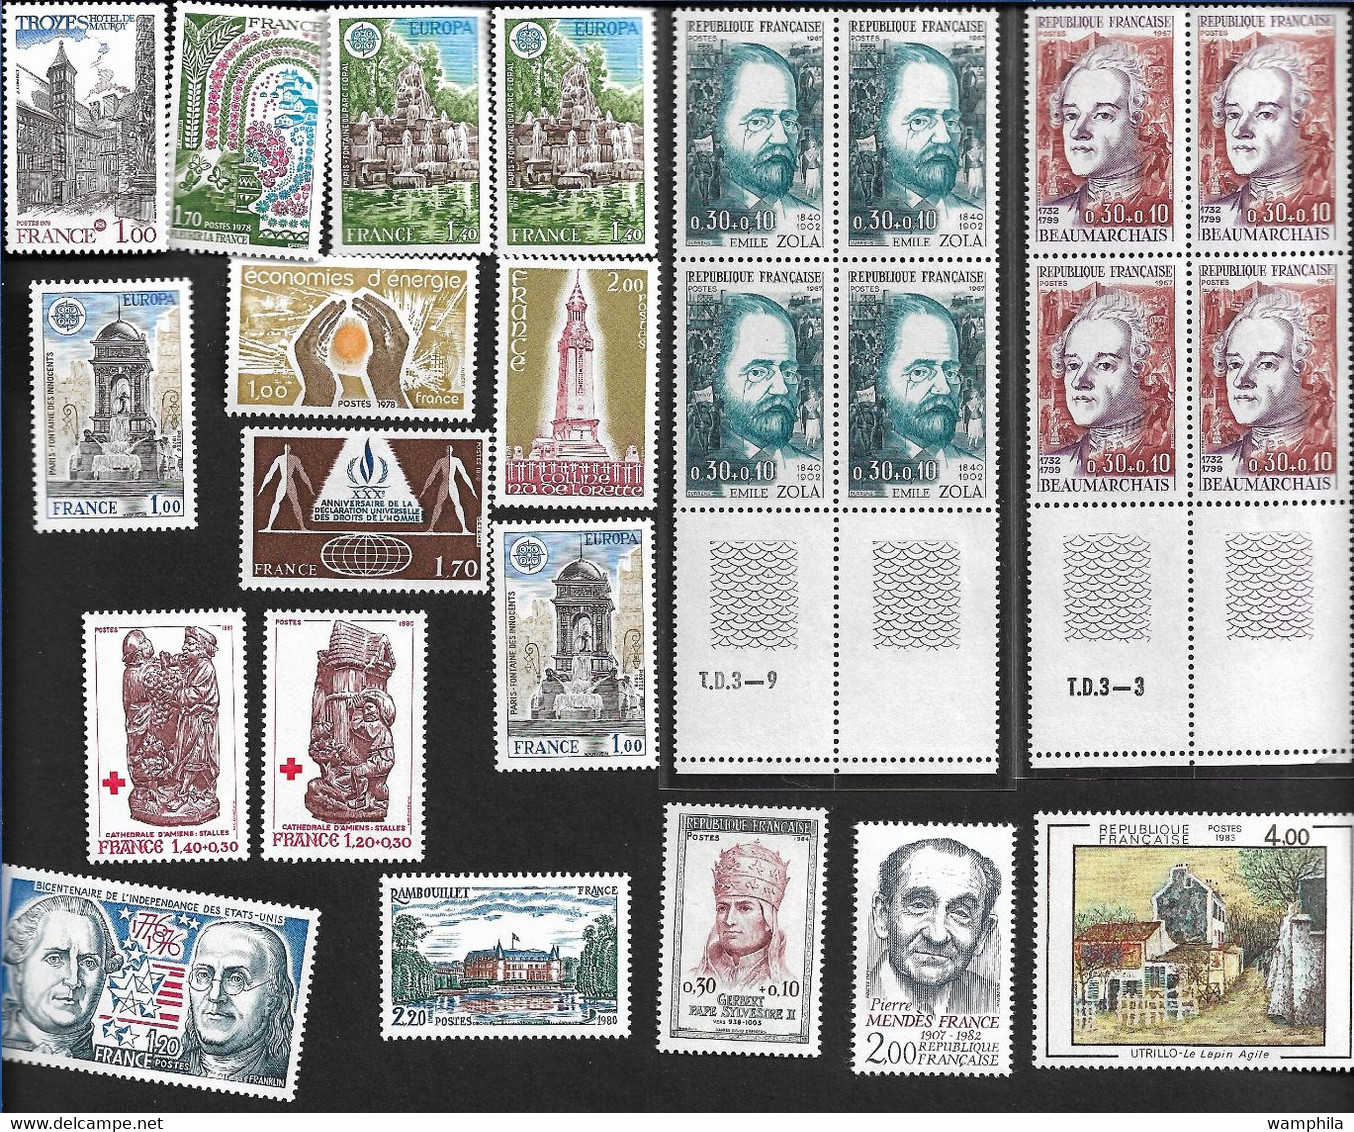 France un lot de timbres moderne (Timbres argent, blocs, et divers).